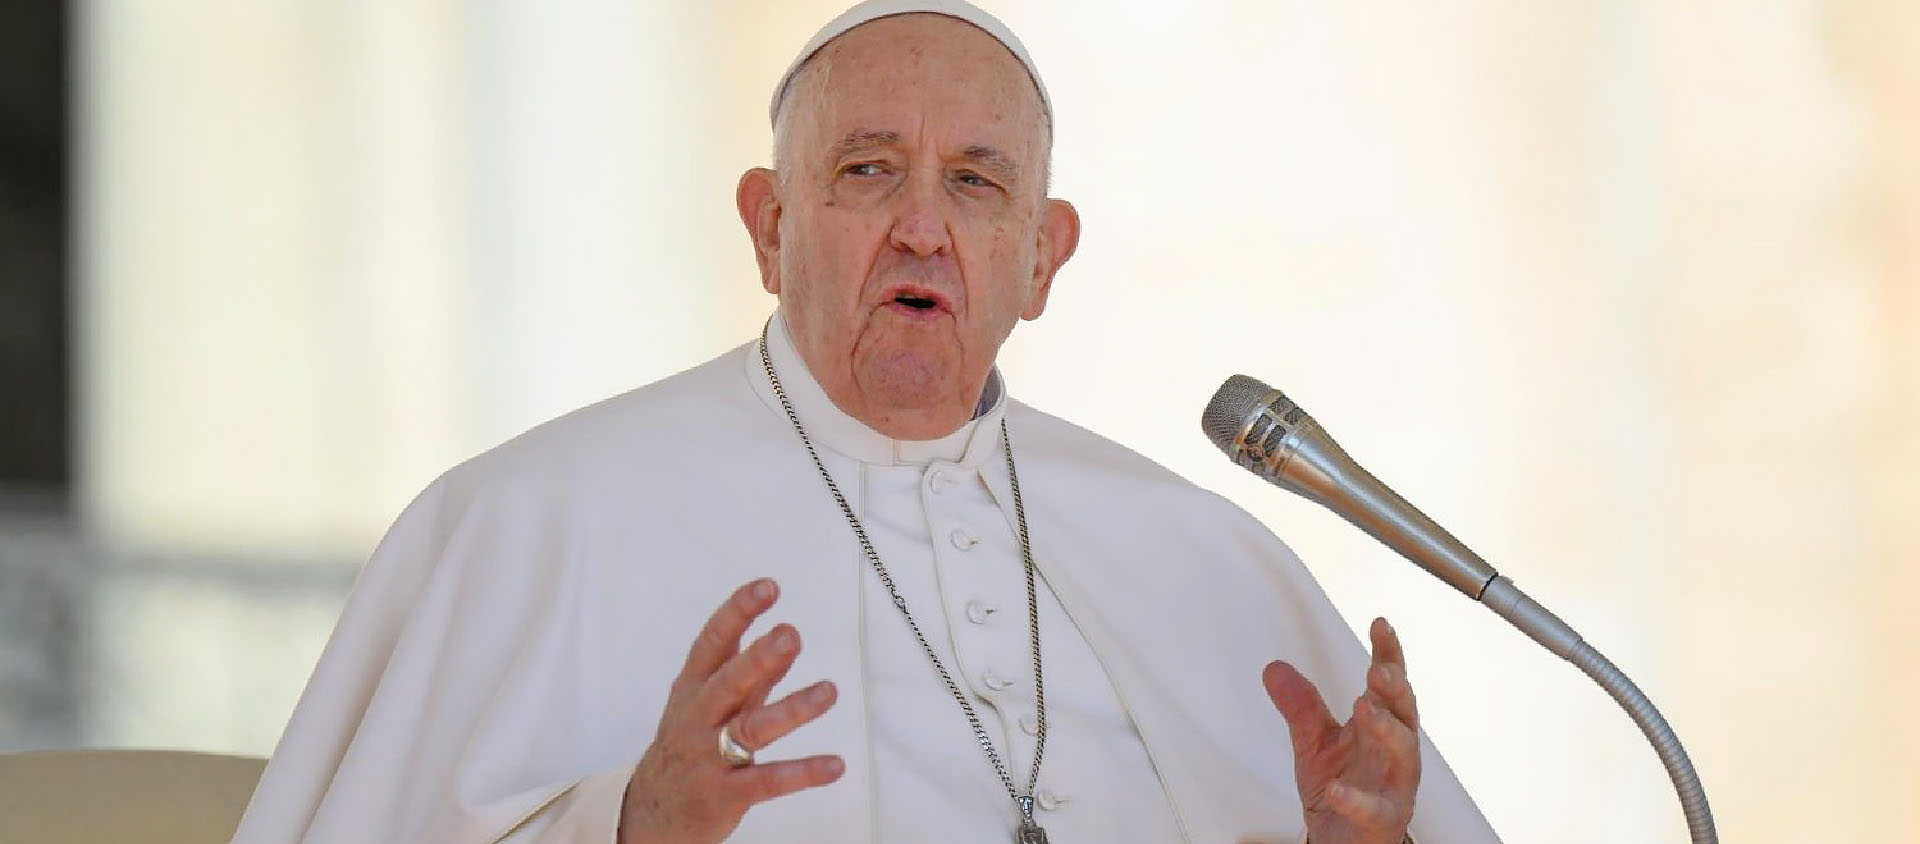 «L’intercession et le travail quotidien sont un pont en direction de toutes les personnes et de tous les péchés», a souligné le pape | © Vatican News